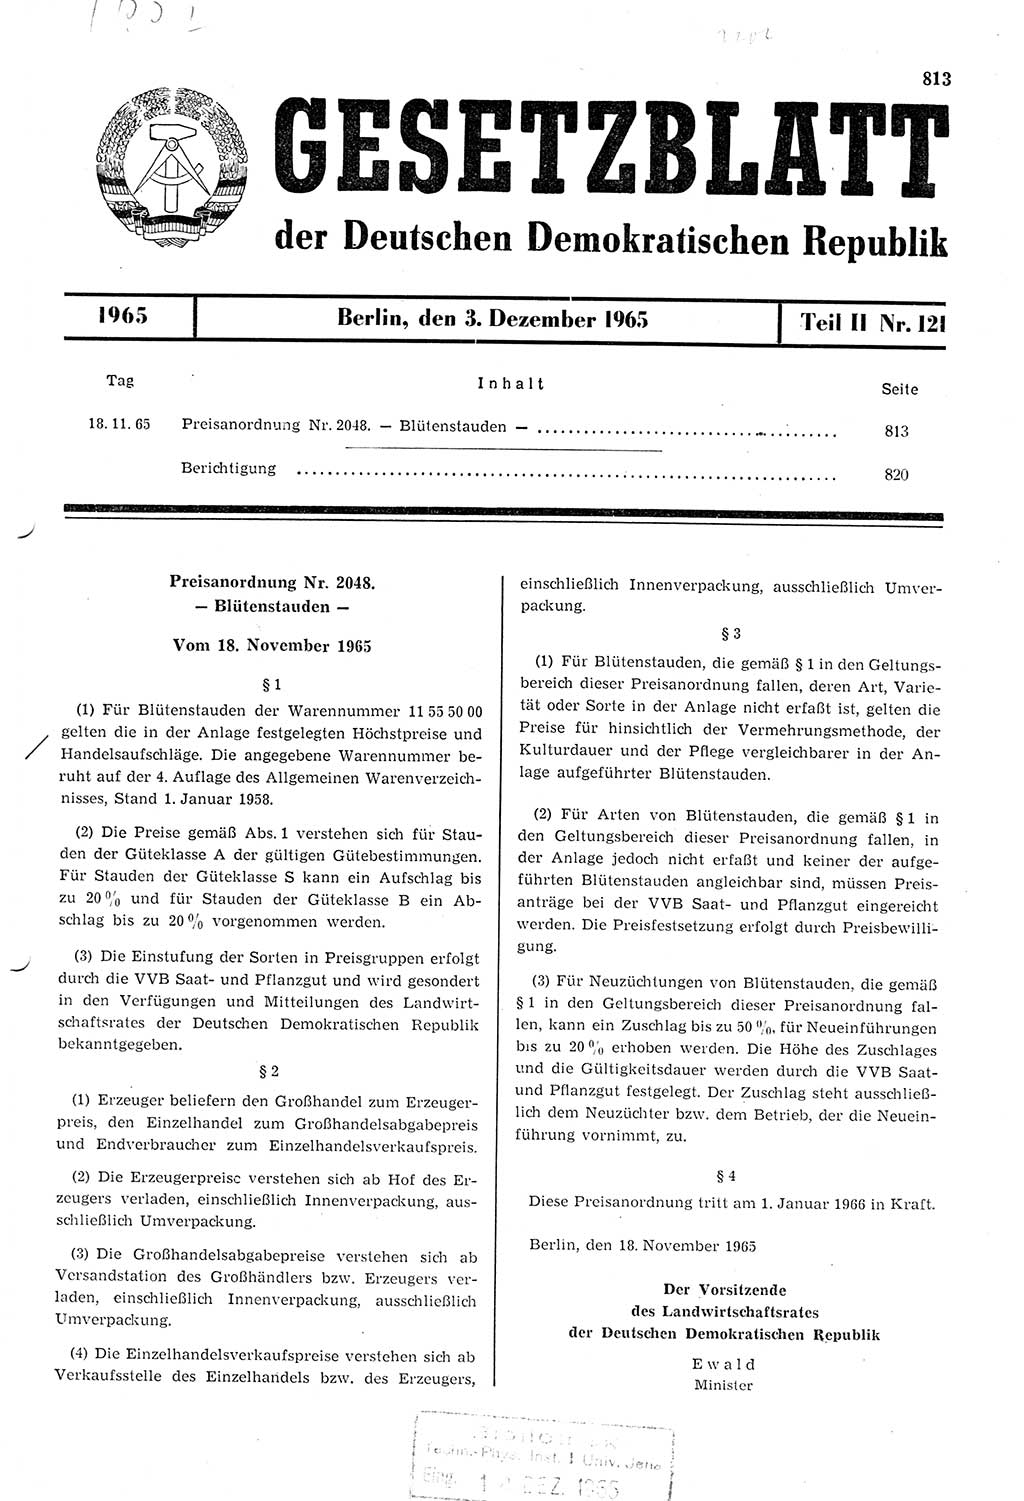 Gesetzblatt (GBl.) der Deutschen Demokratischen Republik (DDR) Teil ⅠⅠ 1965, Seite 813 (GBl. DDR ⅠⅠ 1965, S. 813)